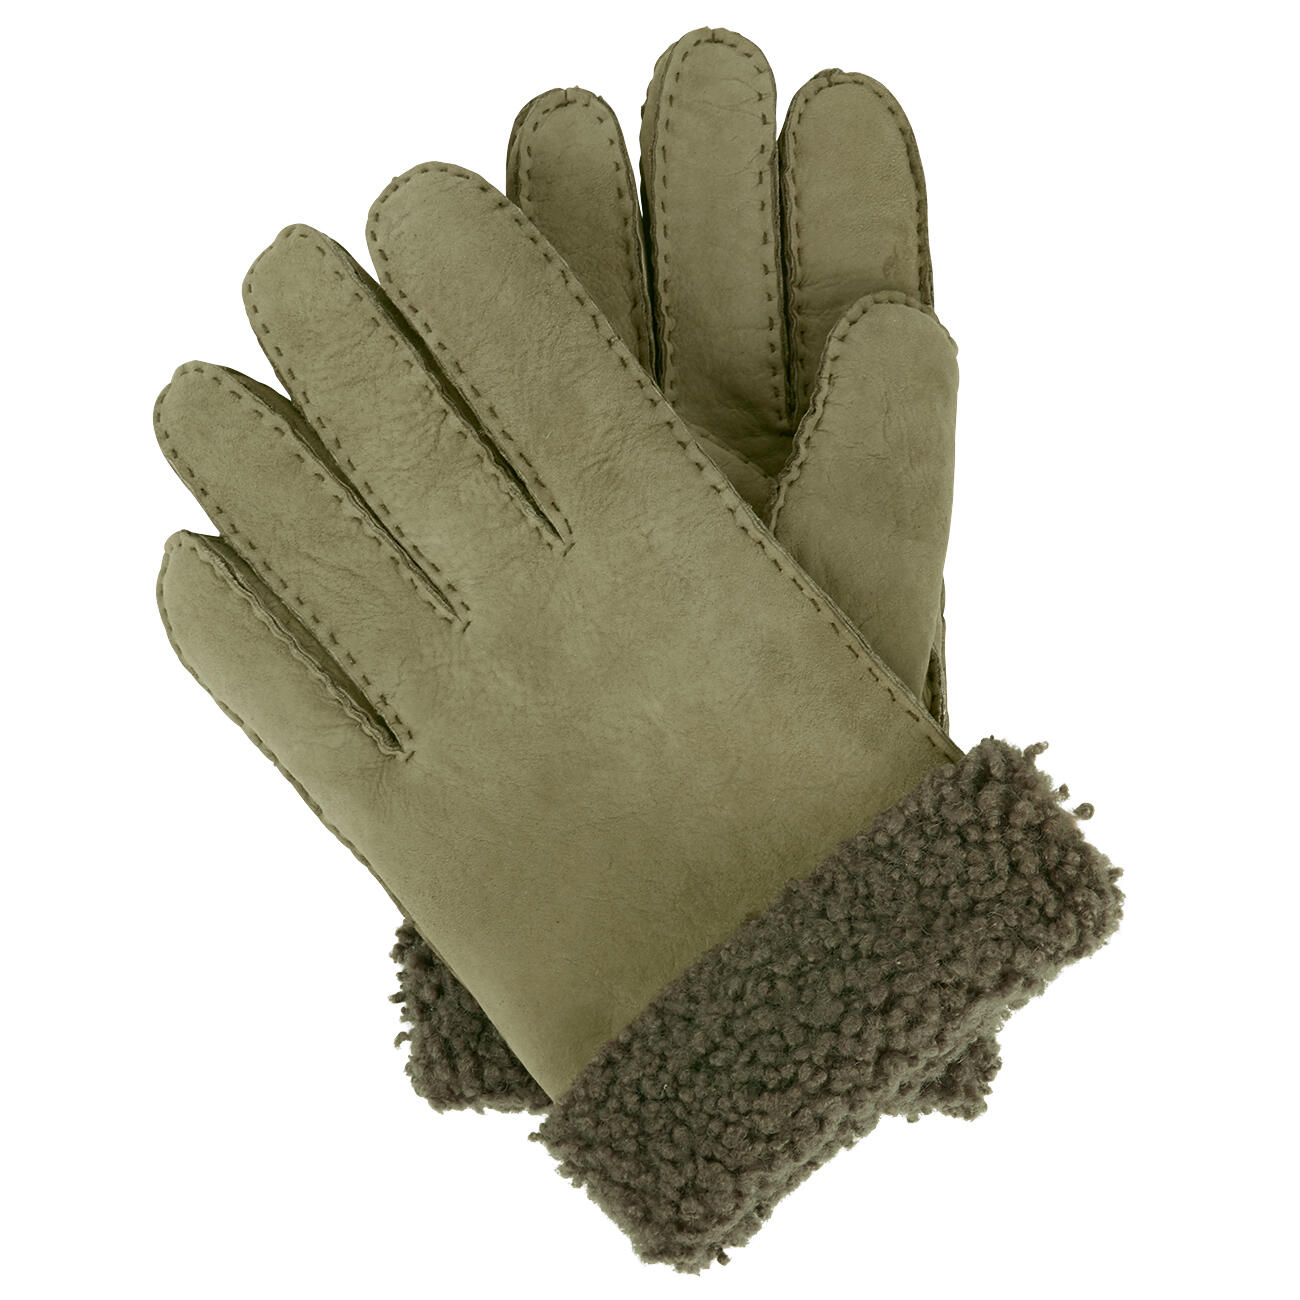 Otto Kessler Curly-Lamm-Handschuhe entdecken